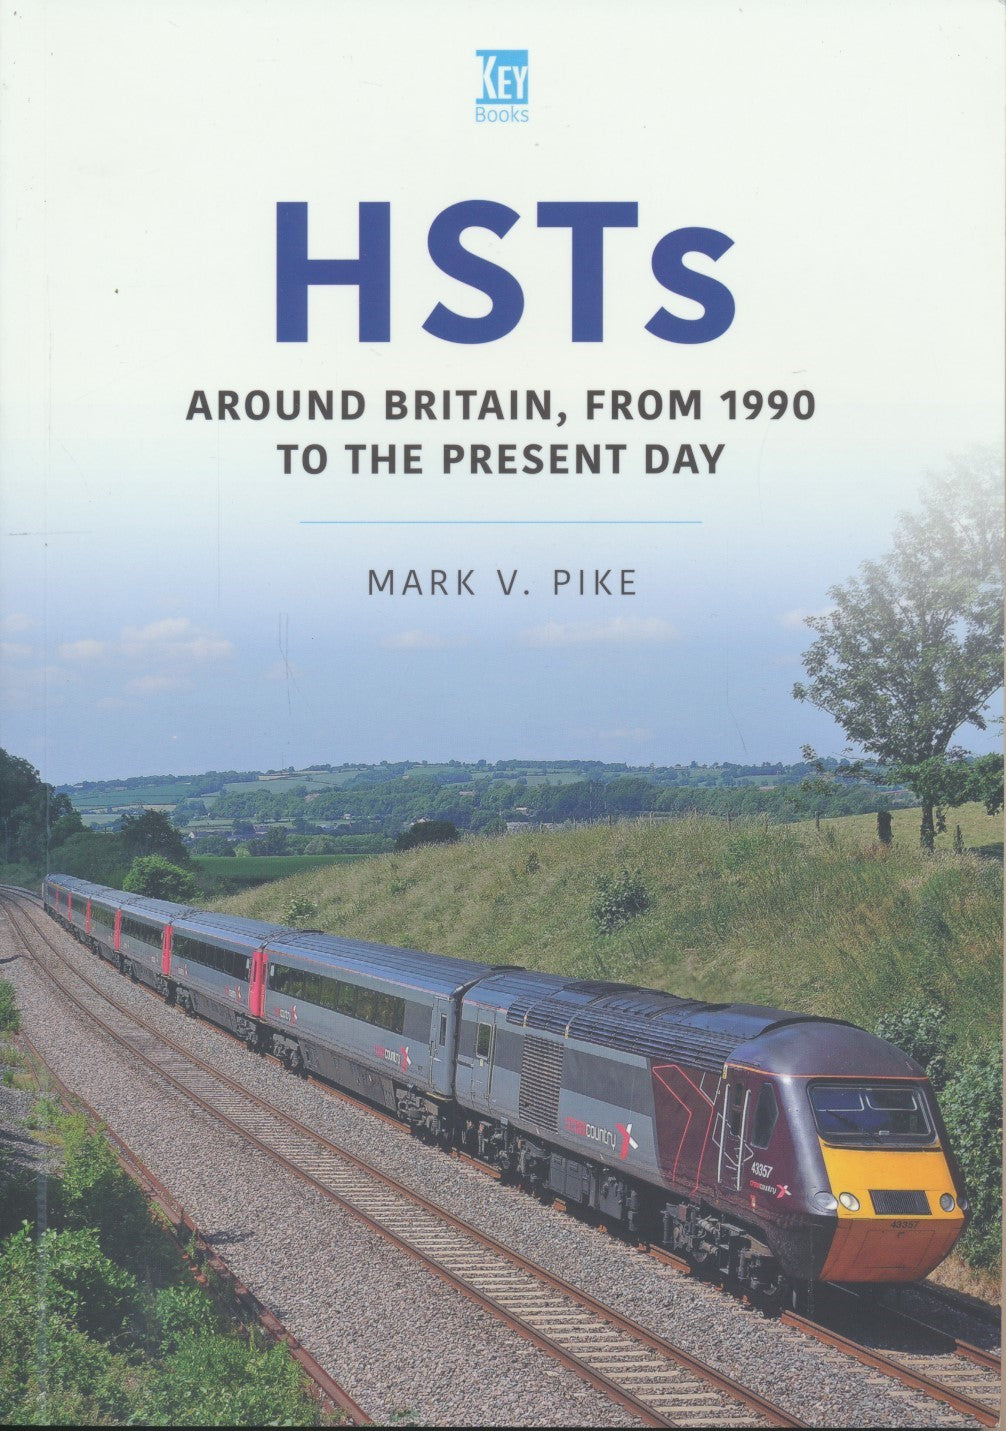 Britain's Railways Series, Volume 33 - HSTs: Around Britain, 1990 to Present